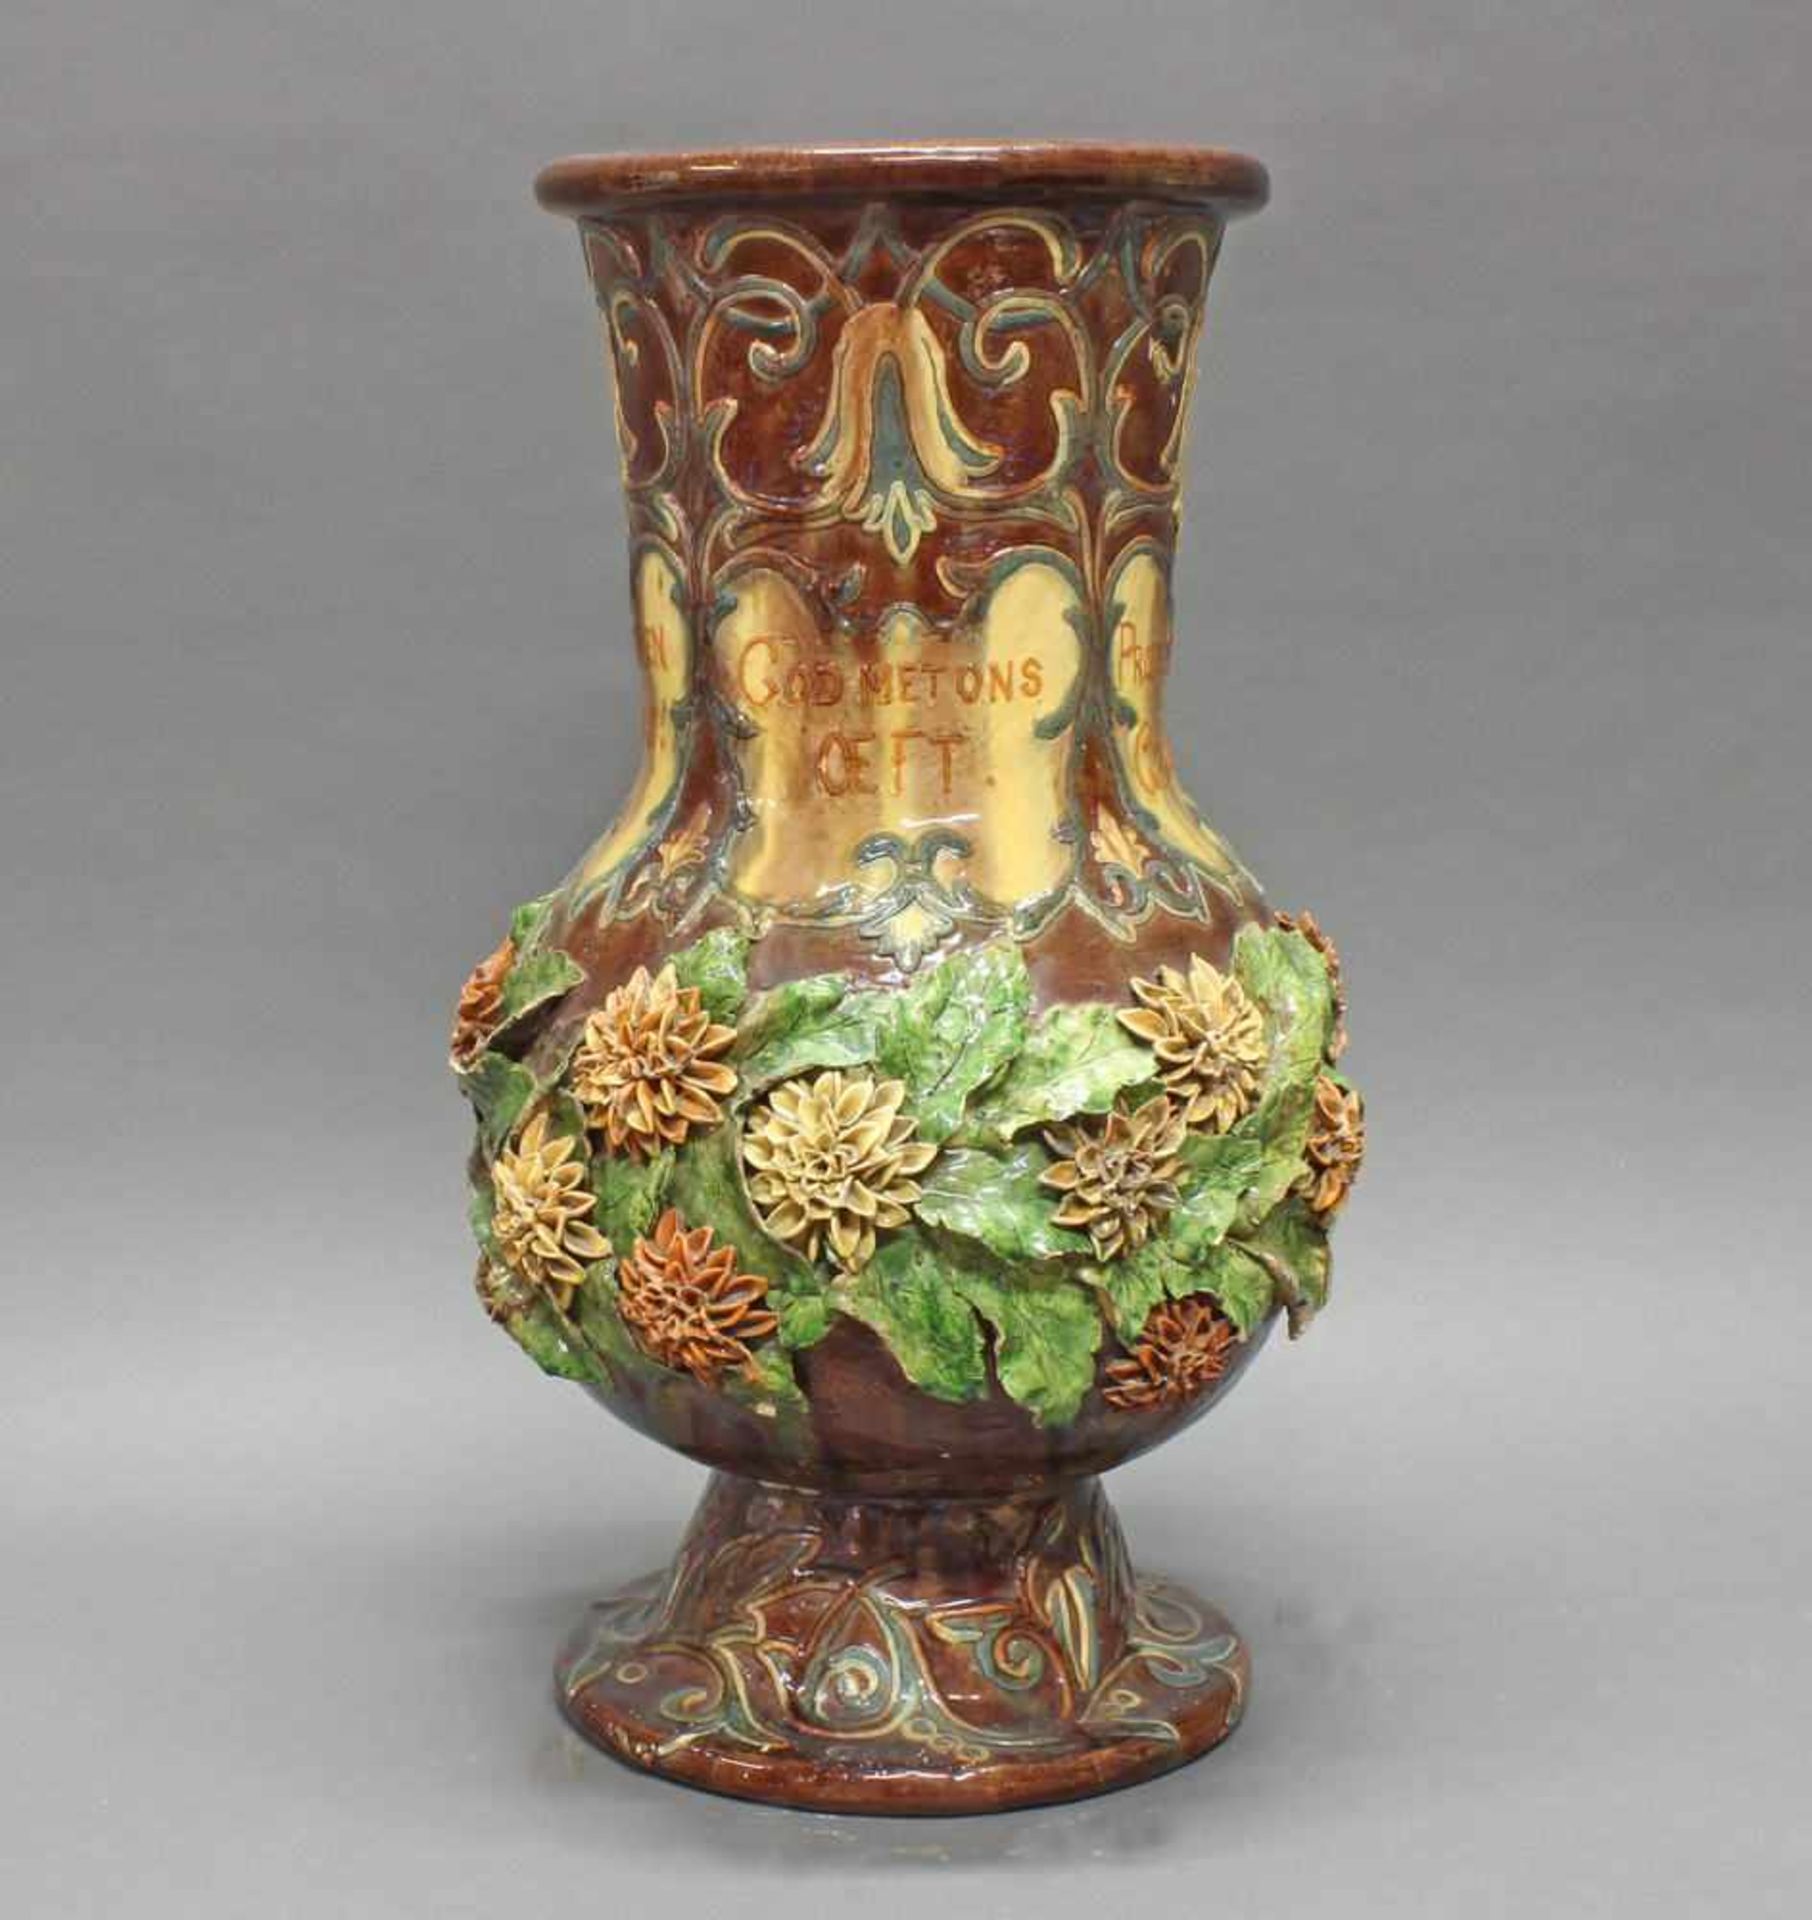 Vase, Keramik, Flandern, 1889, signiert L. Maes Thornhout 1889, polychrom, mit aufgesetzten Blüten - Image 3 of 10